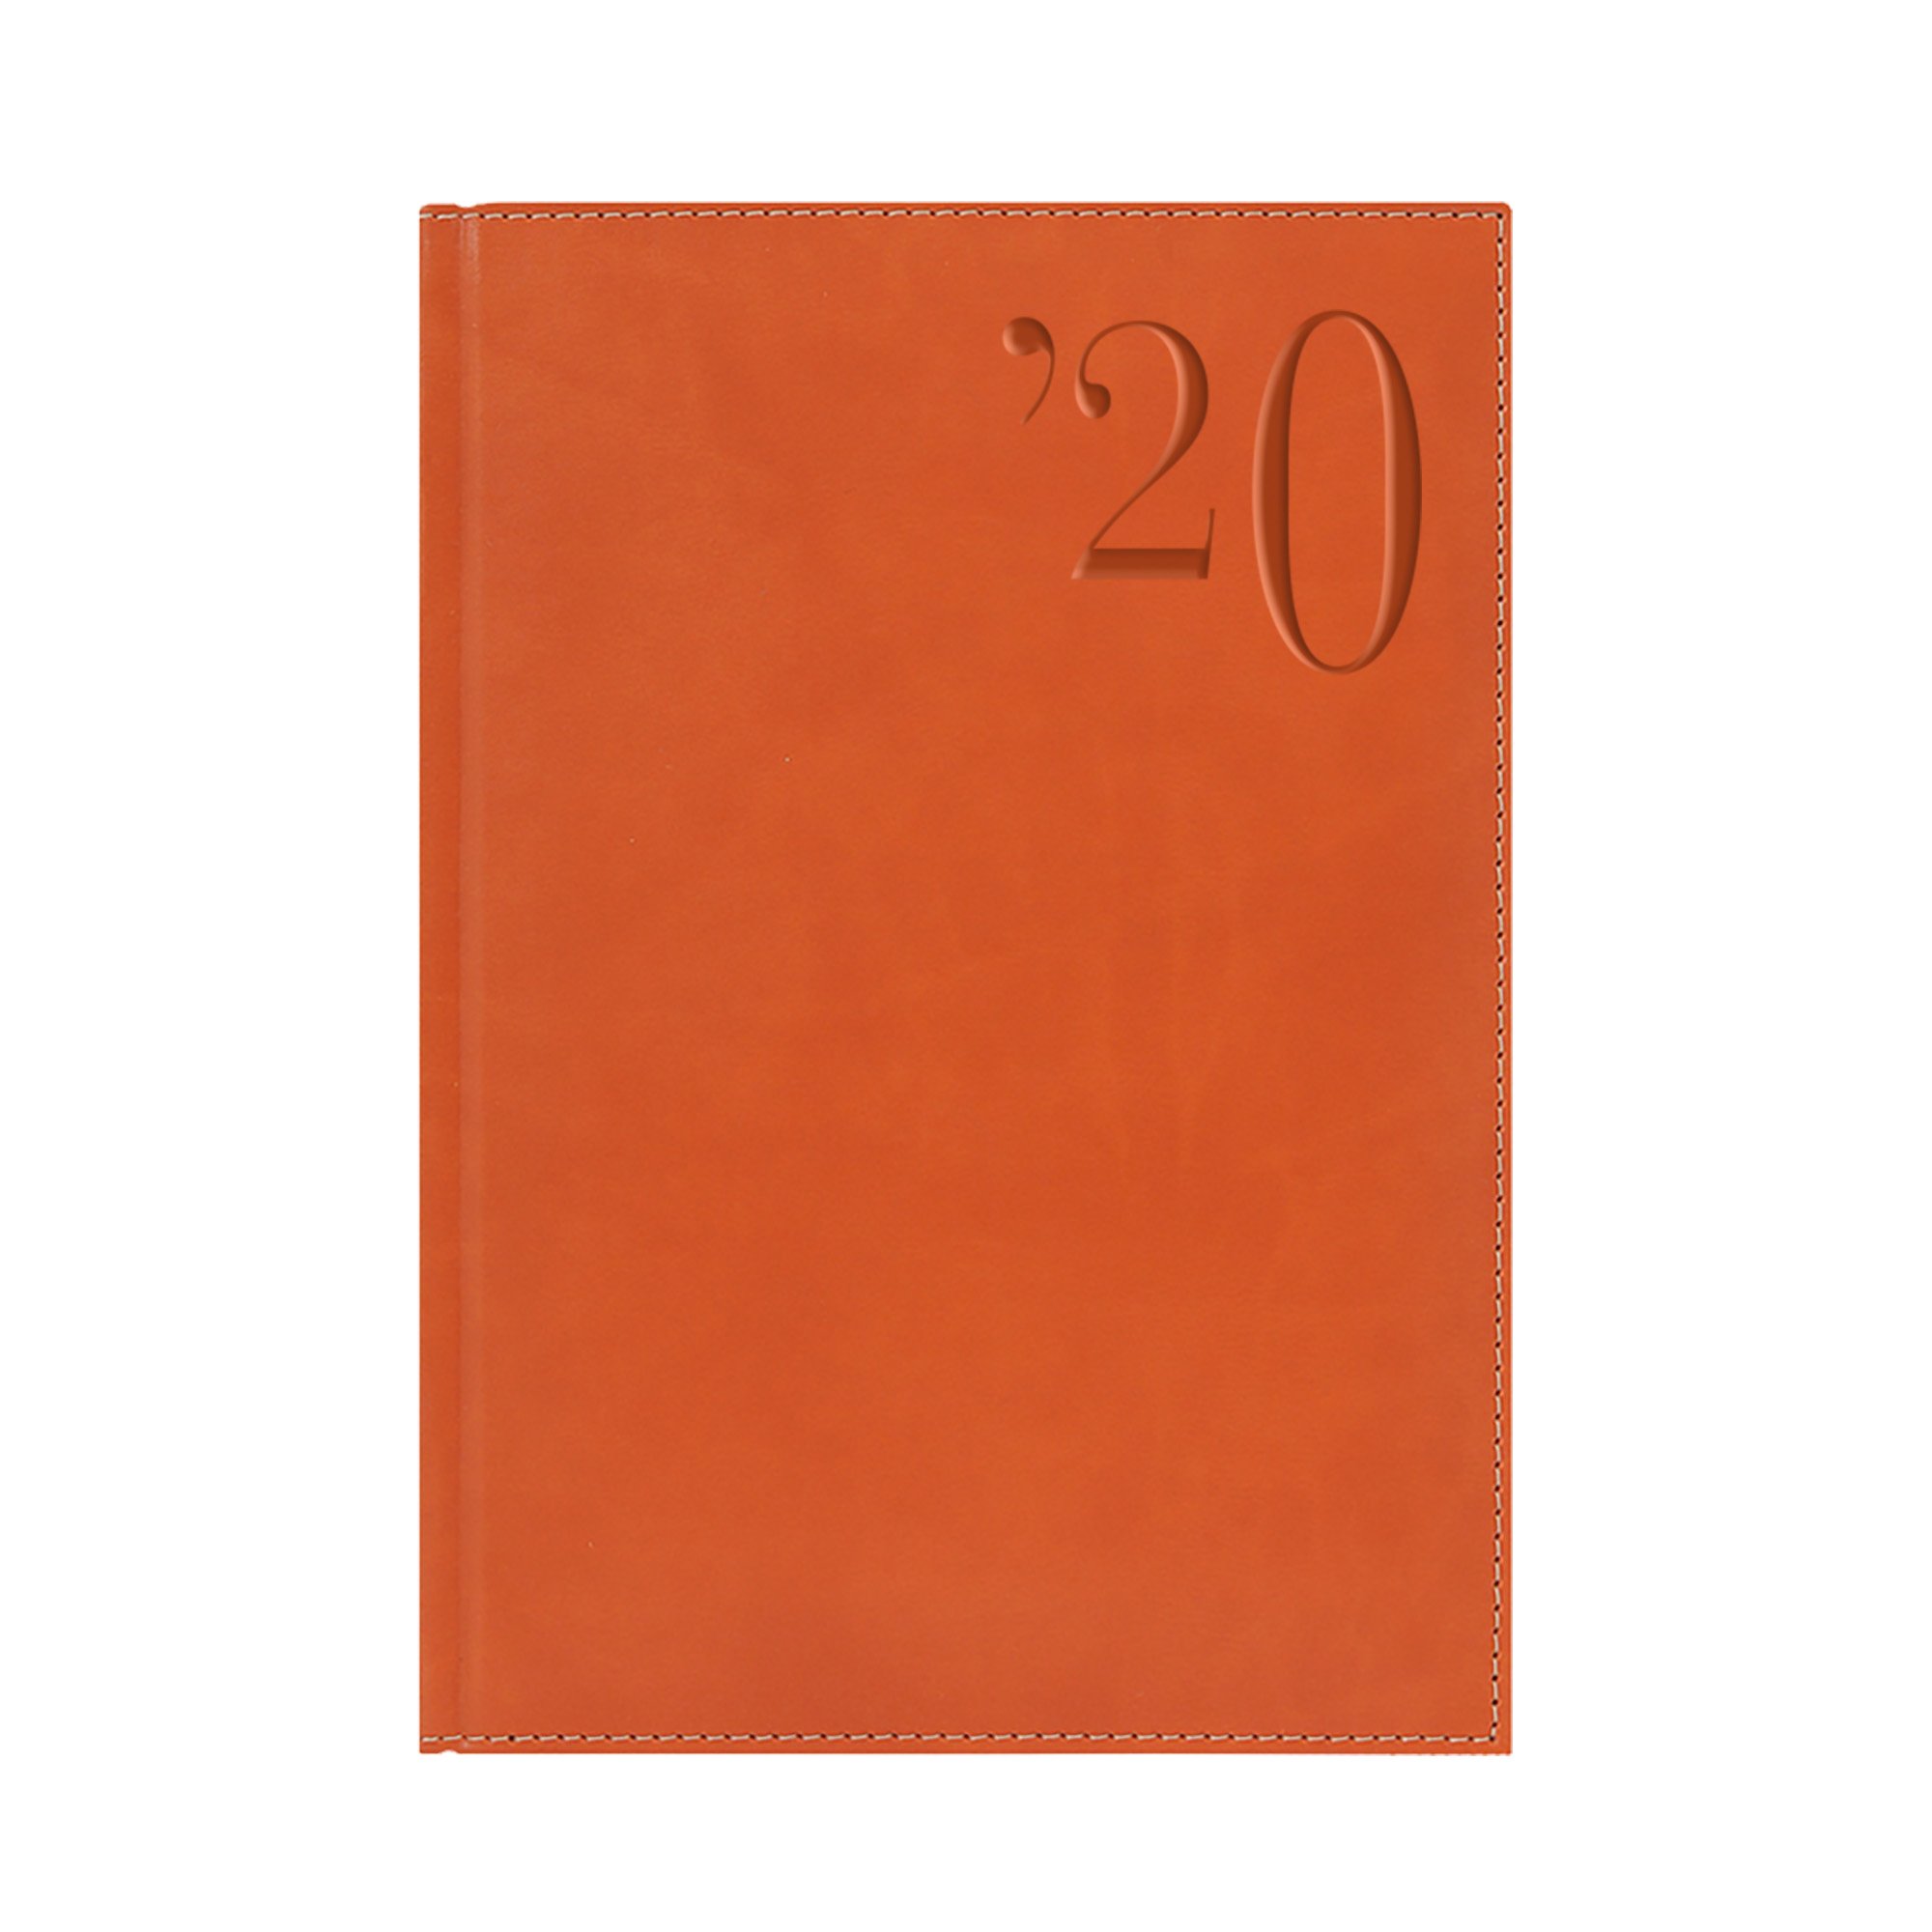 Ежедневник PORTLAND, А5, датированный (2020 г